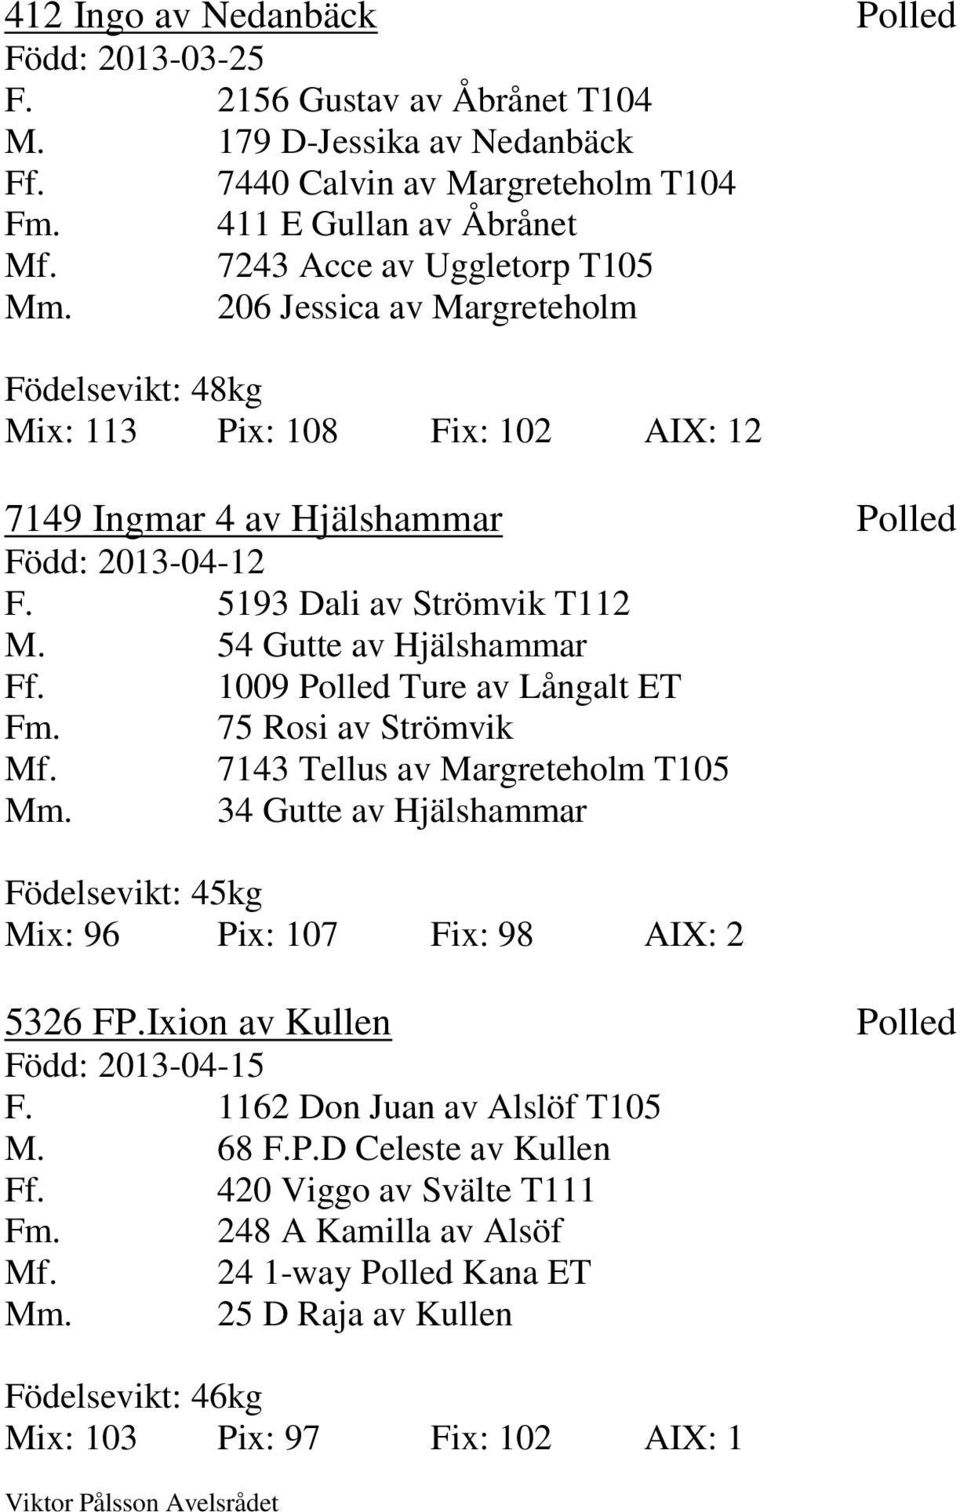 54 Gutte av Hjälshammar Ff. 1009 Polled Ture av Långalt ET Fm. 75 Rosi av Strömvik Mf. 7143 Tellus av Margreteholm T105 Mm.